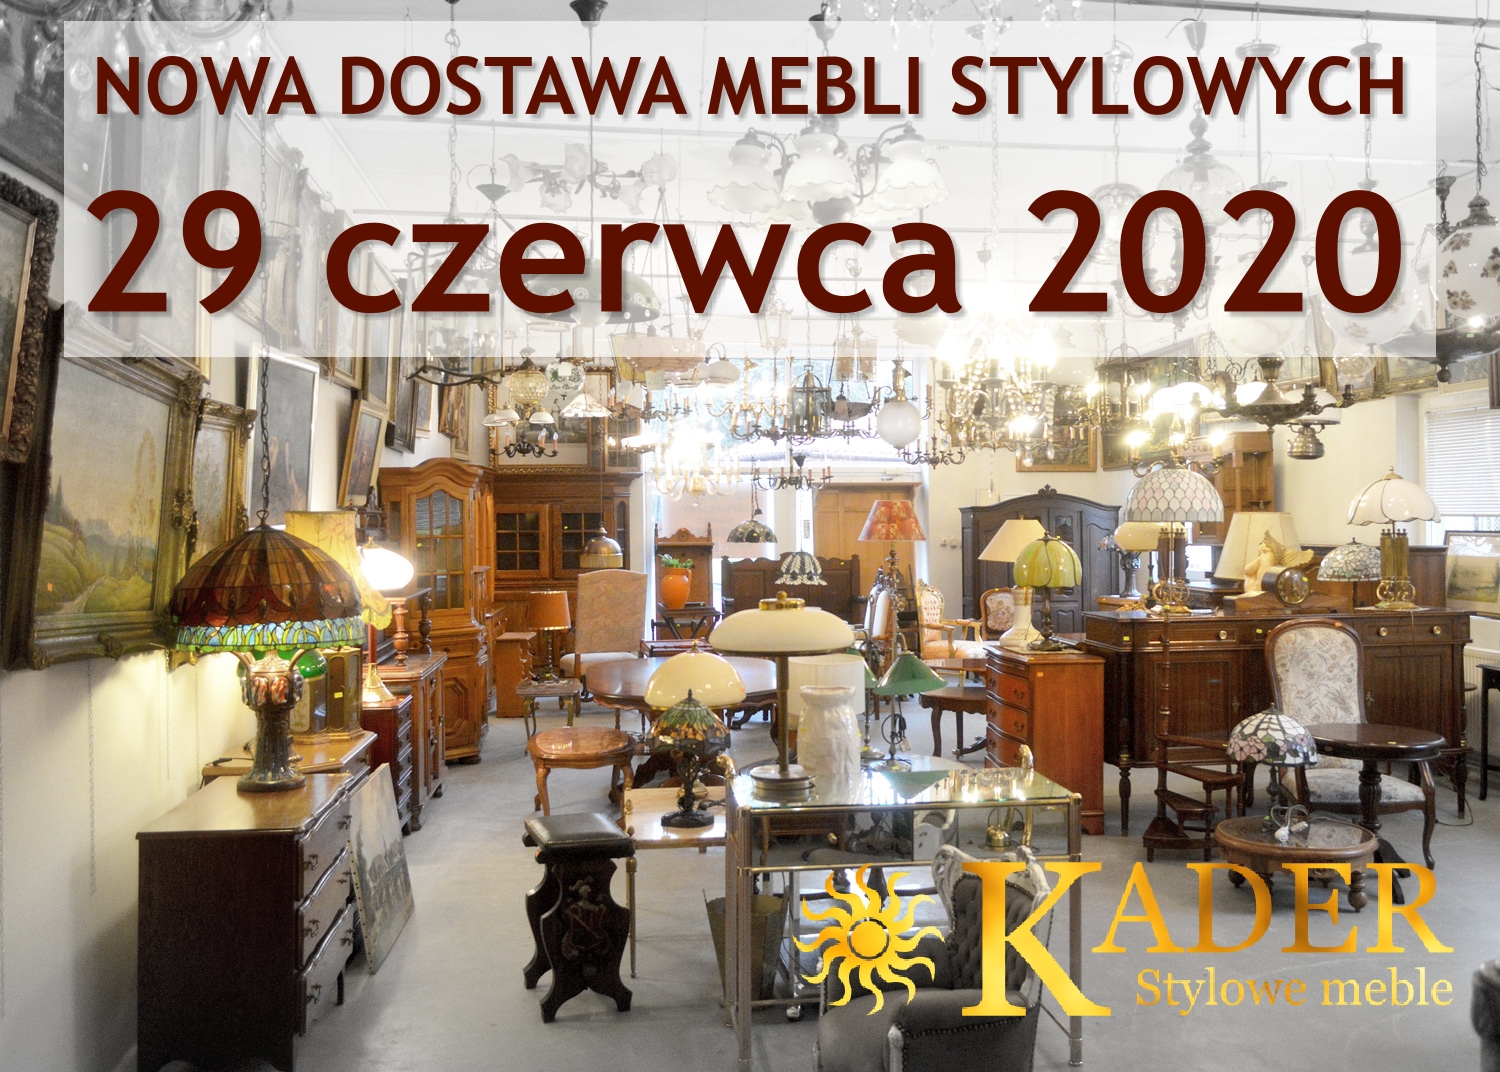 Nowa dostawa mebli stylowych 20.07.2020 - KADER Grodzisk Mazowiecki